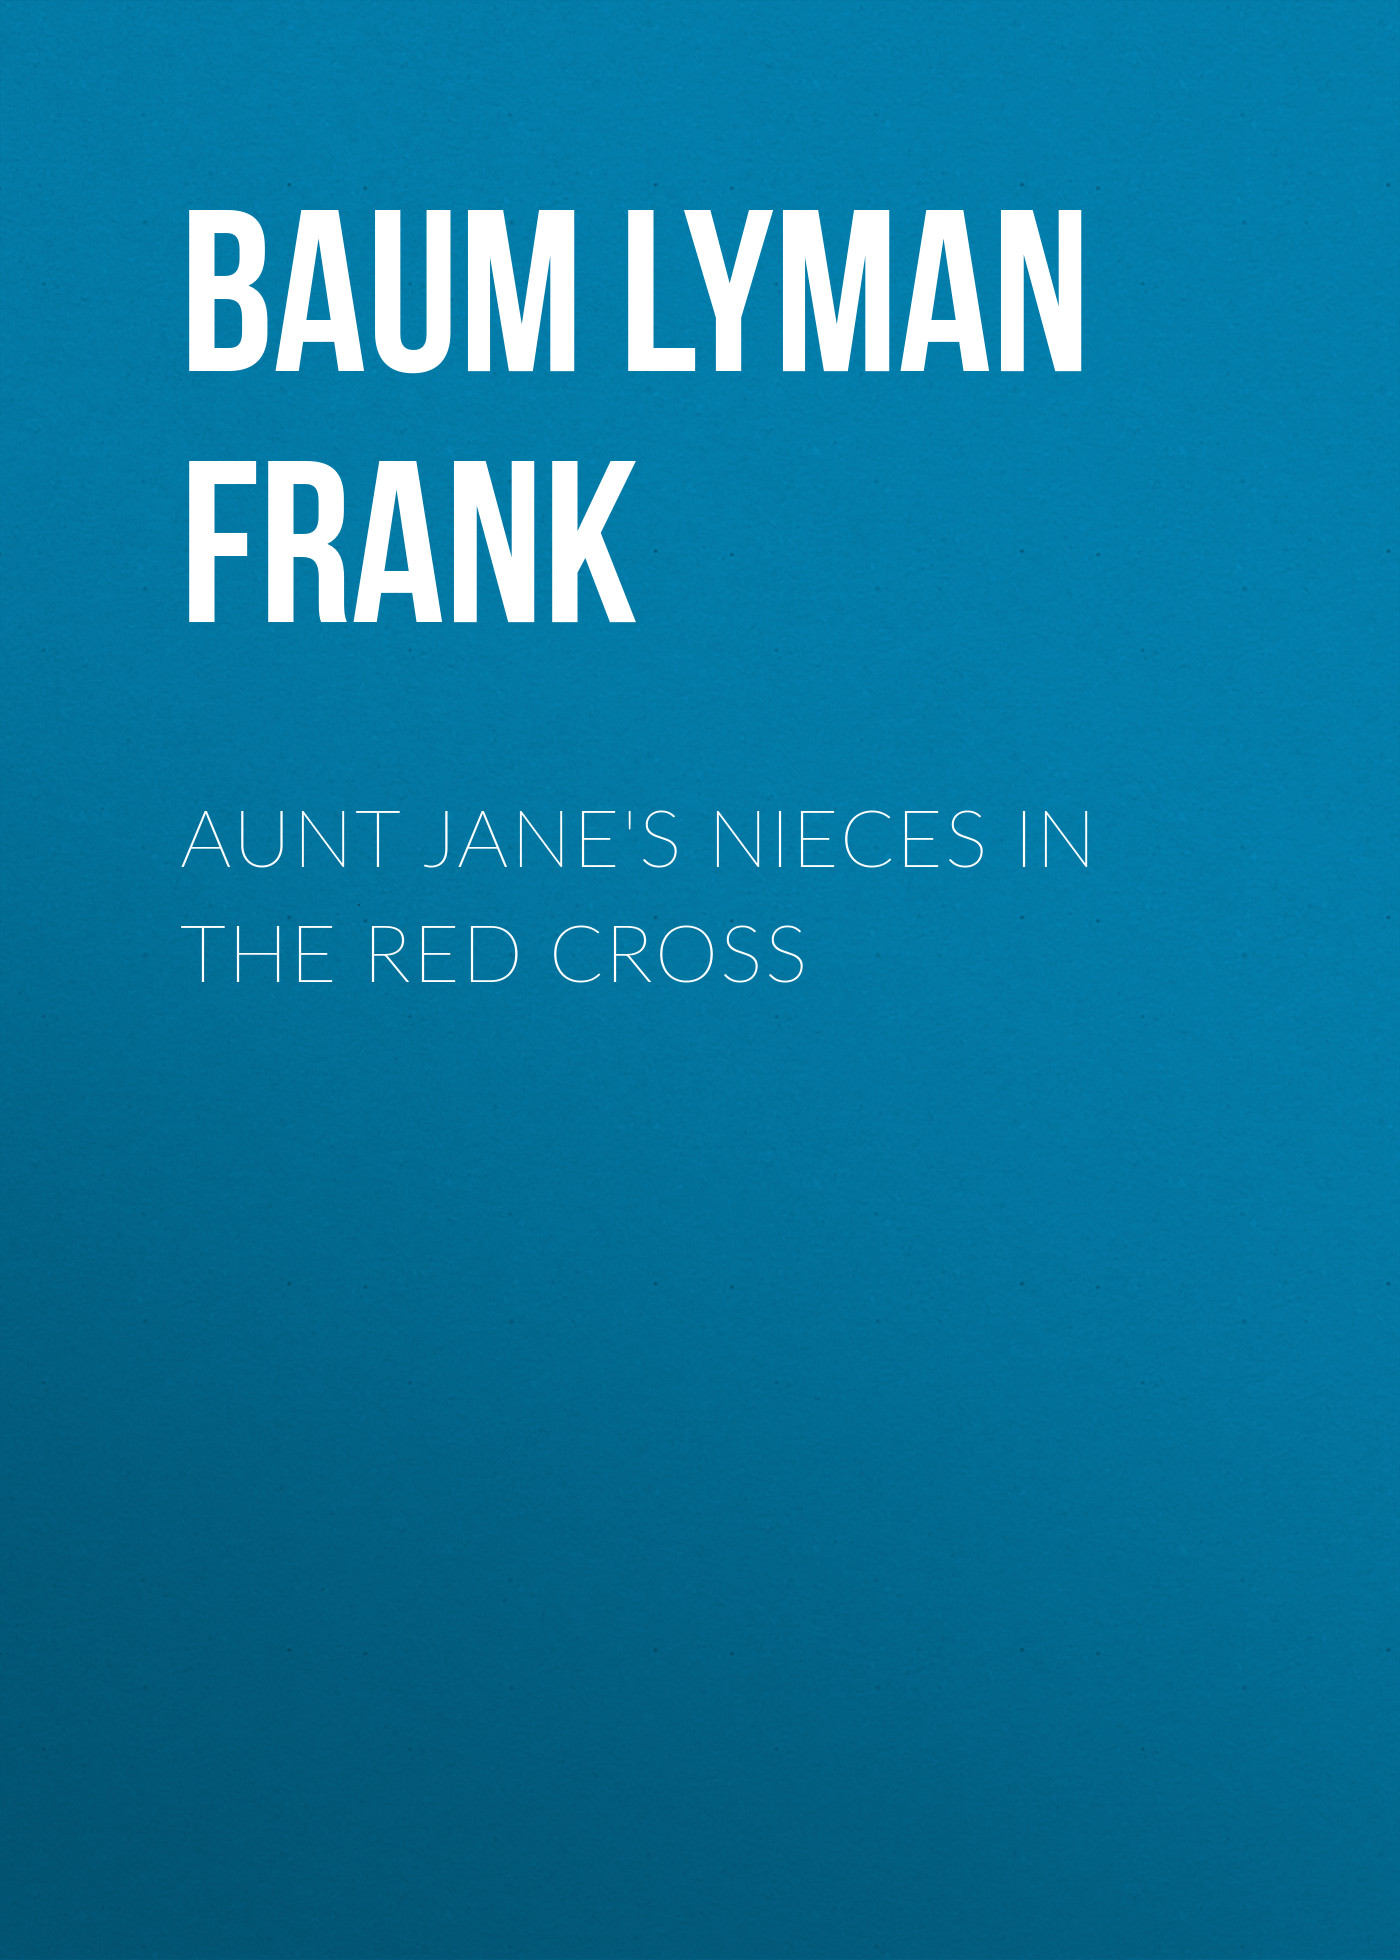 Книга Aunt Jane's Nieces in the Red Cross из серии , созданная Lyman Baum, может относится к жанру Зарубежная старинная литература, Зарубежная классика. Стоимость электронной книги Aunt Jane's Nieces in the Red Cross с идентификатором 25019347 составляет 0 руб.